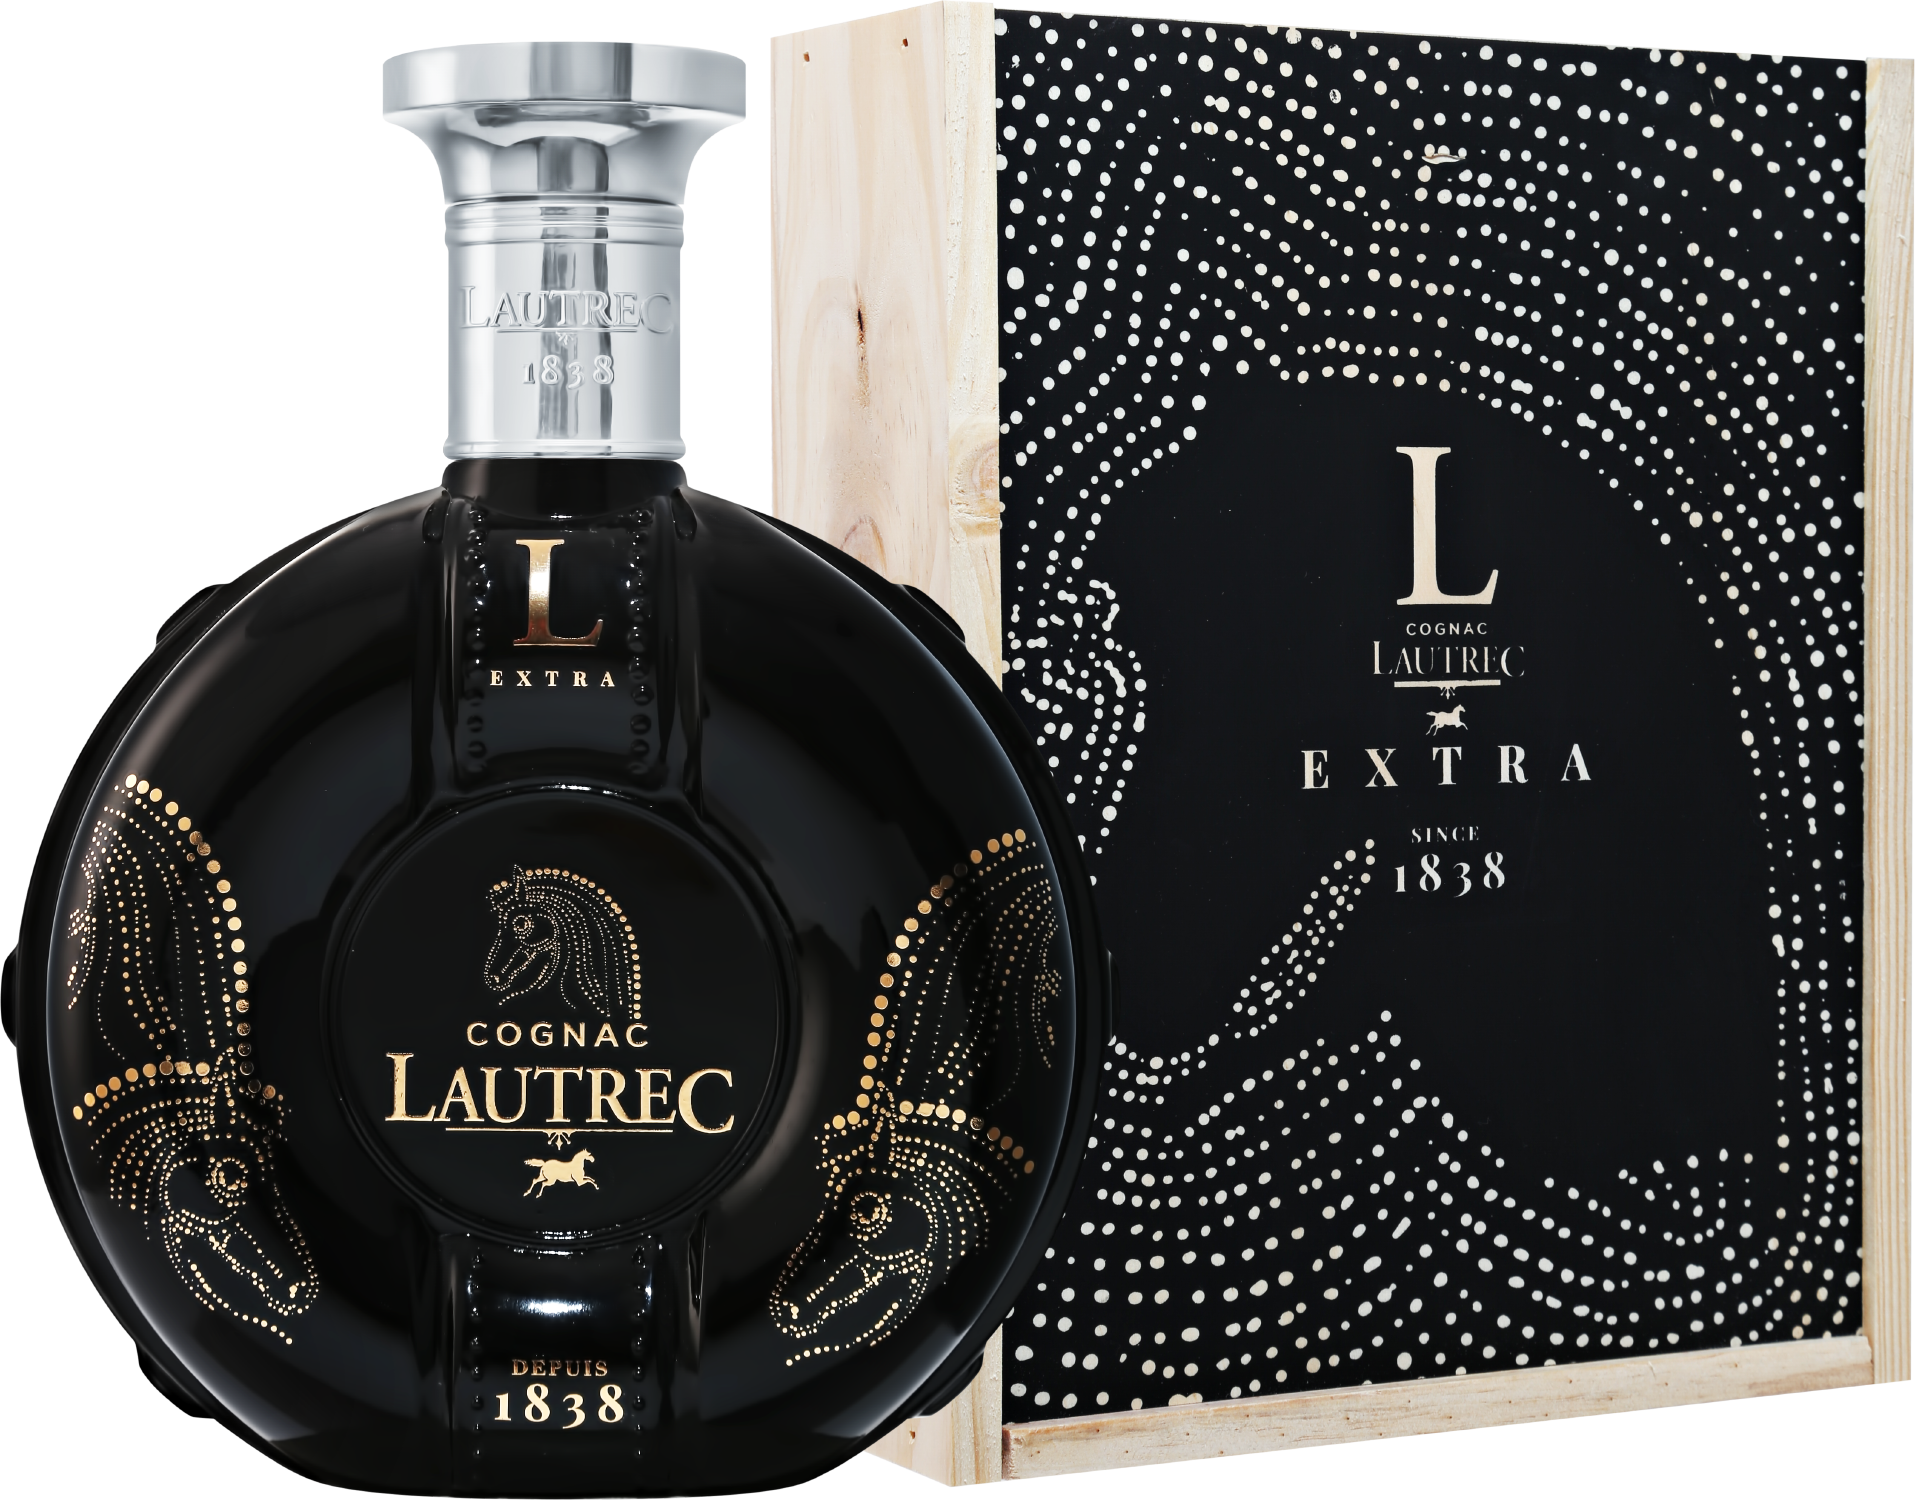 Lautrec Cognac EXTRA Grande Champagne Premier Cru (gift box) lautrec cognac extra grande champagne premier cru gift box